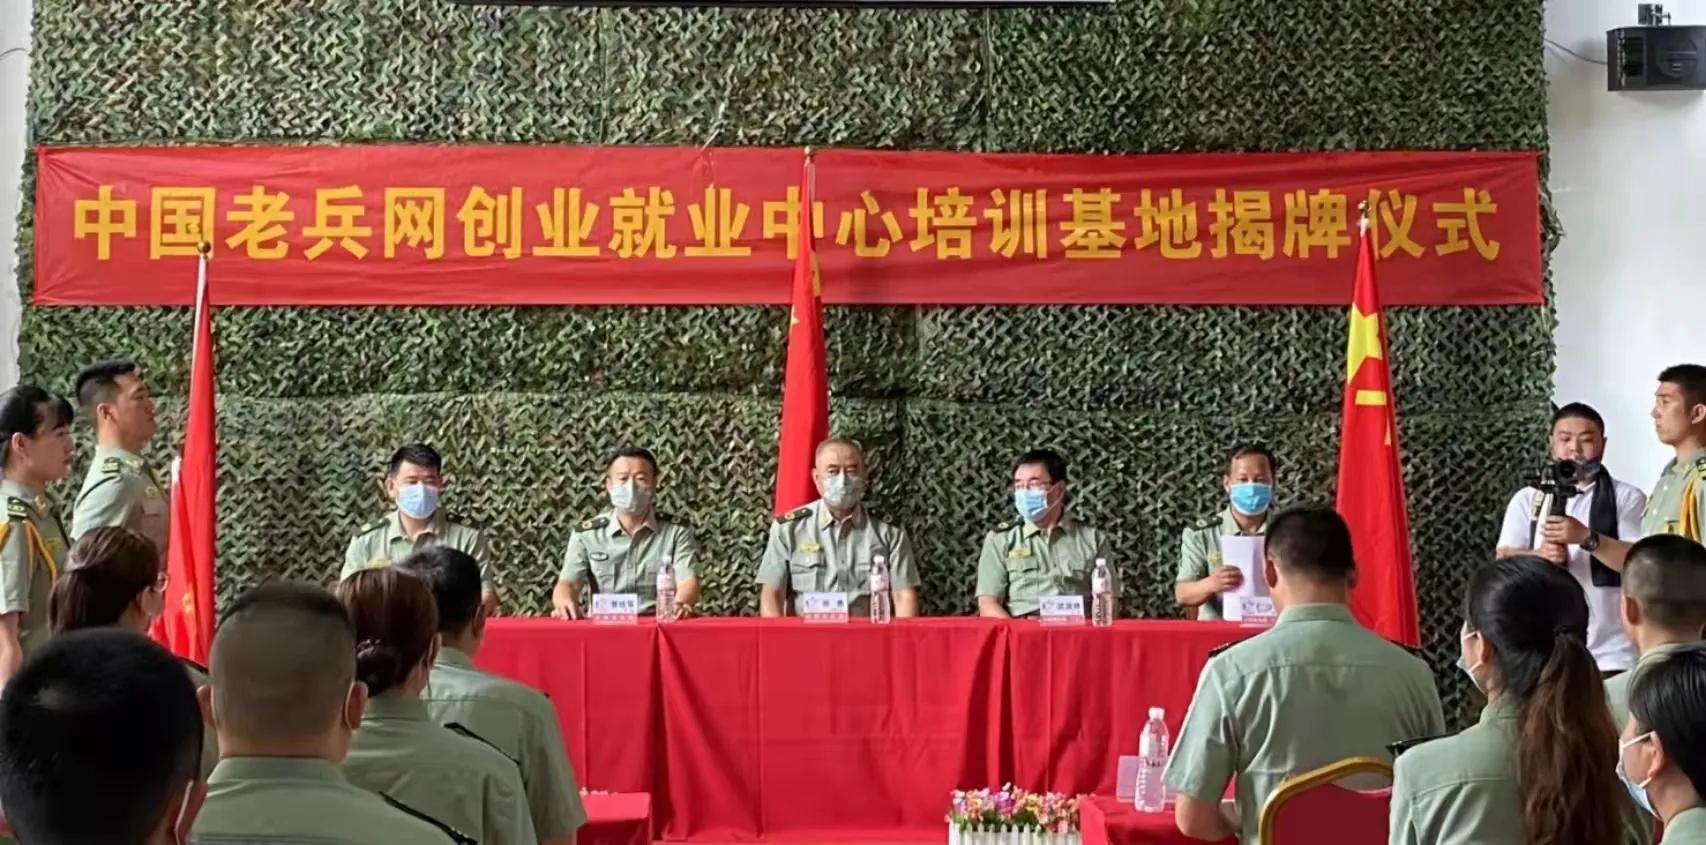 《中国老兵网》创业就业中心培训基地揭牌仪式